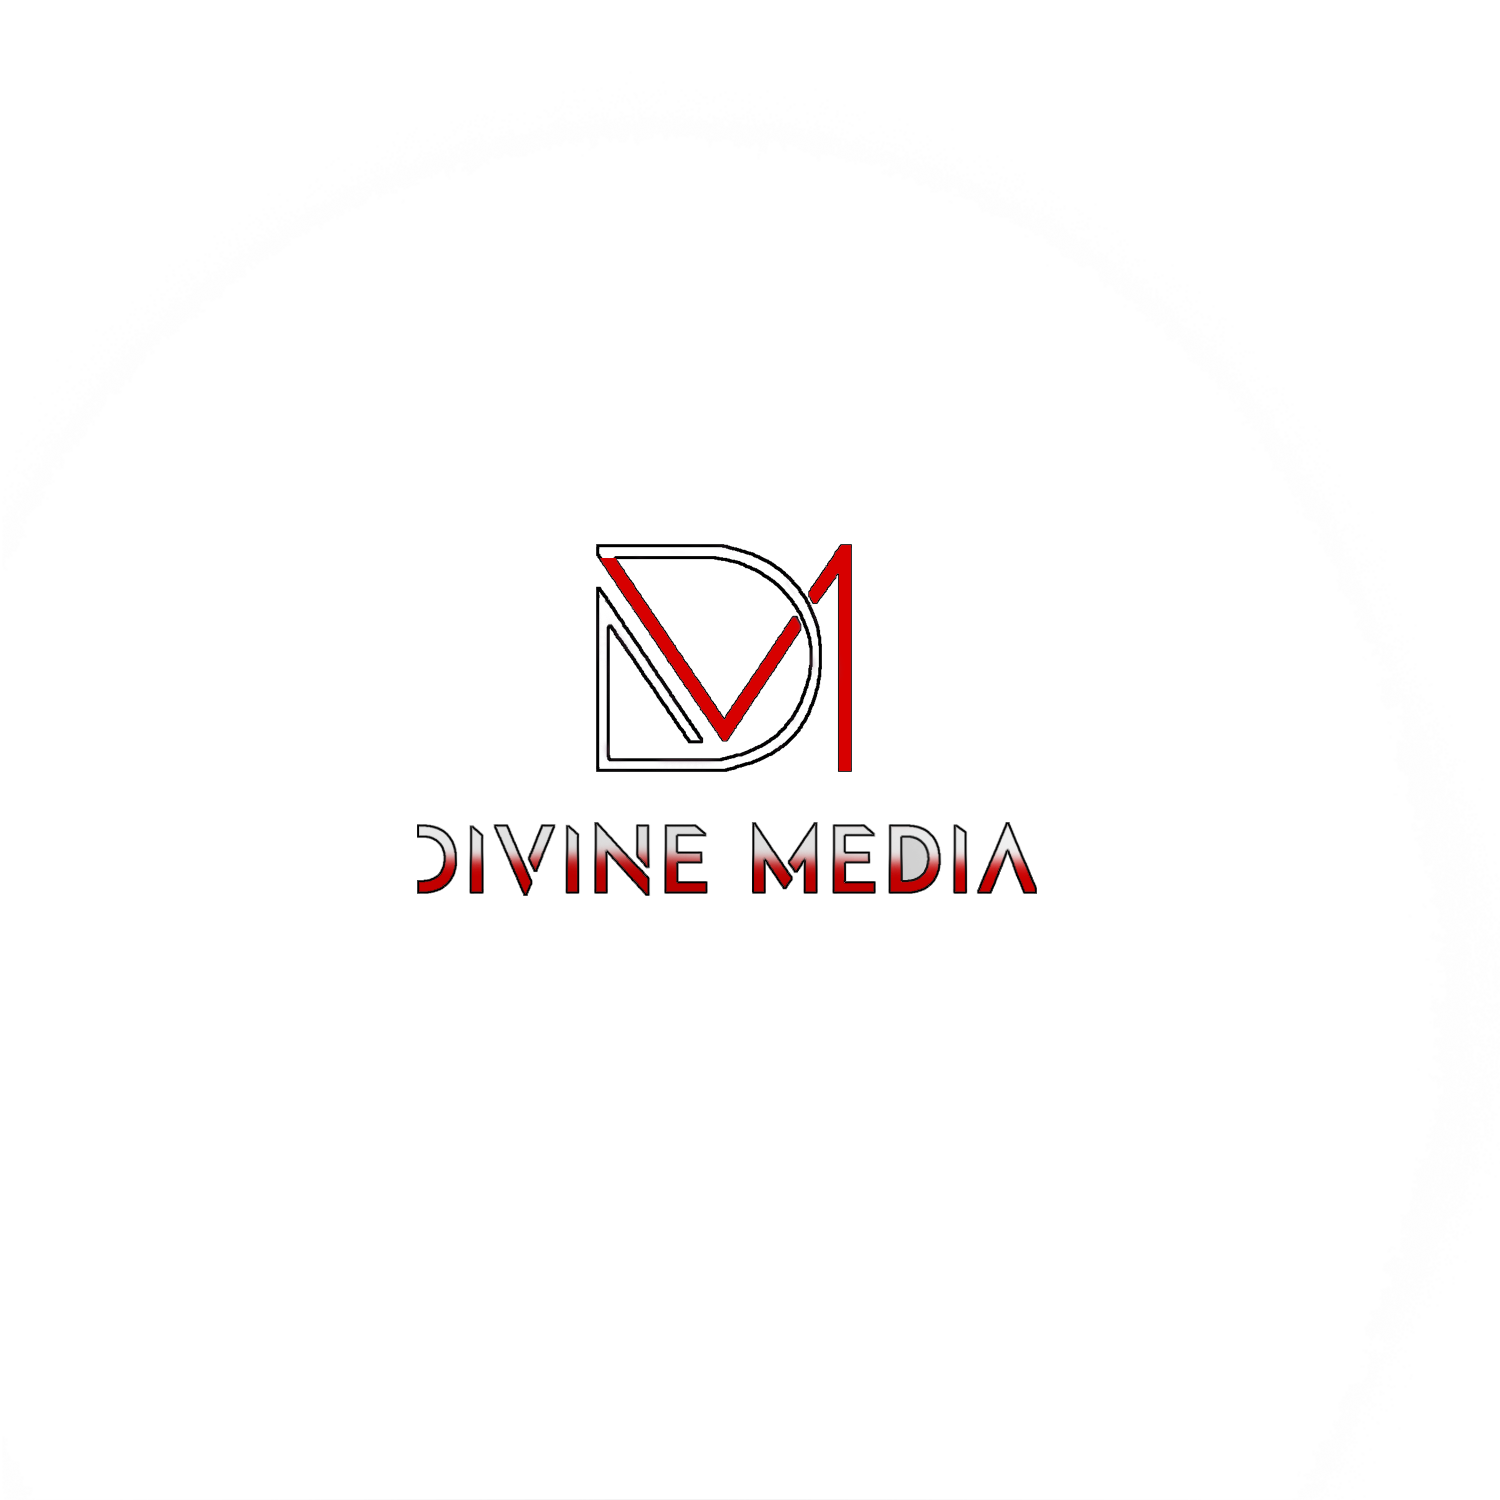 Divine Media